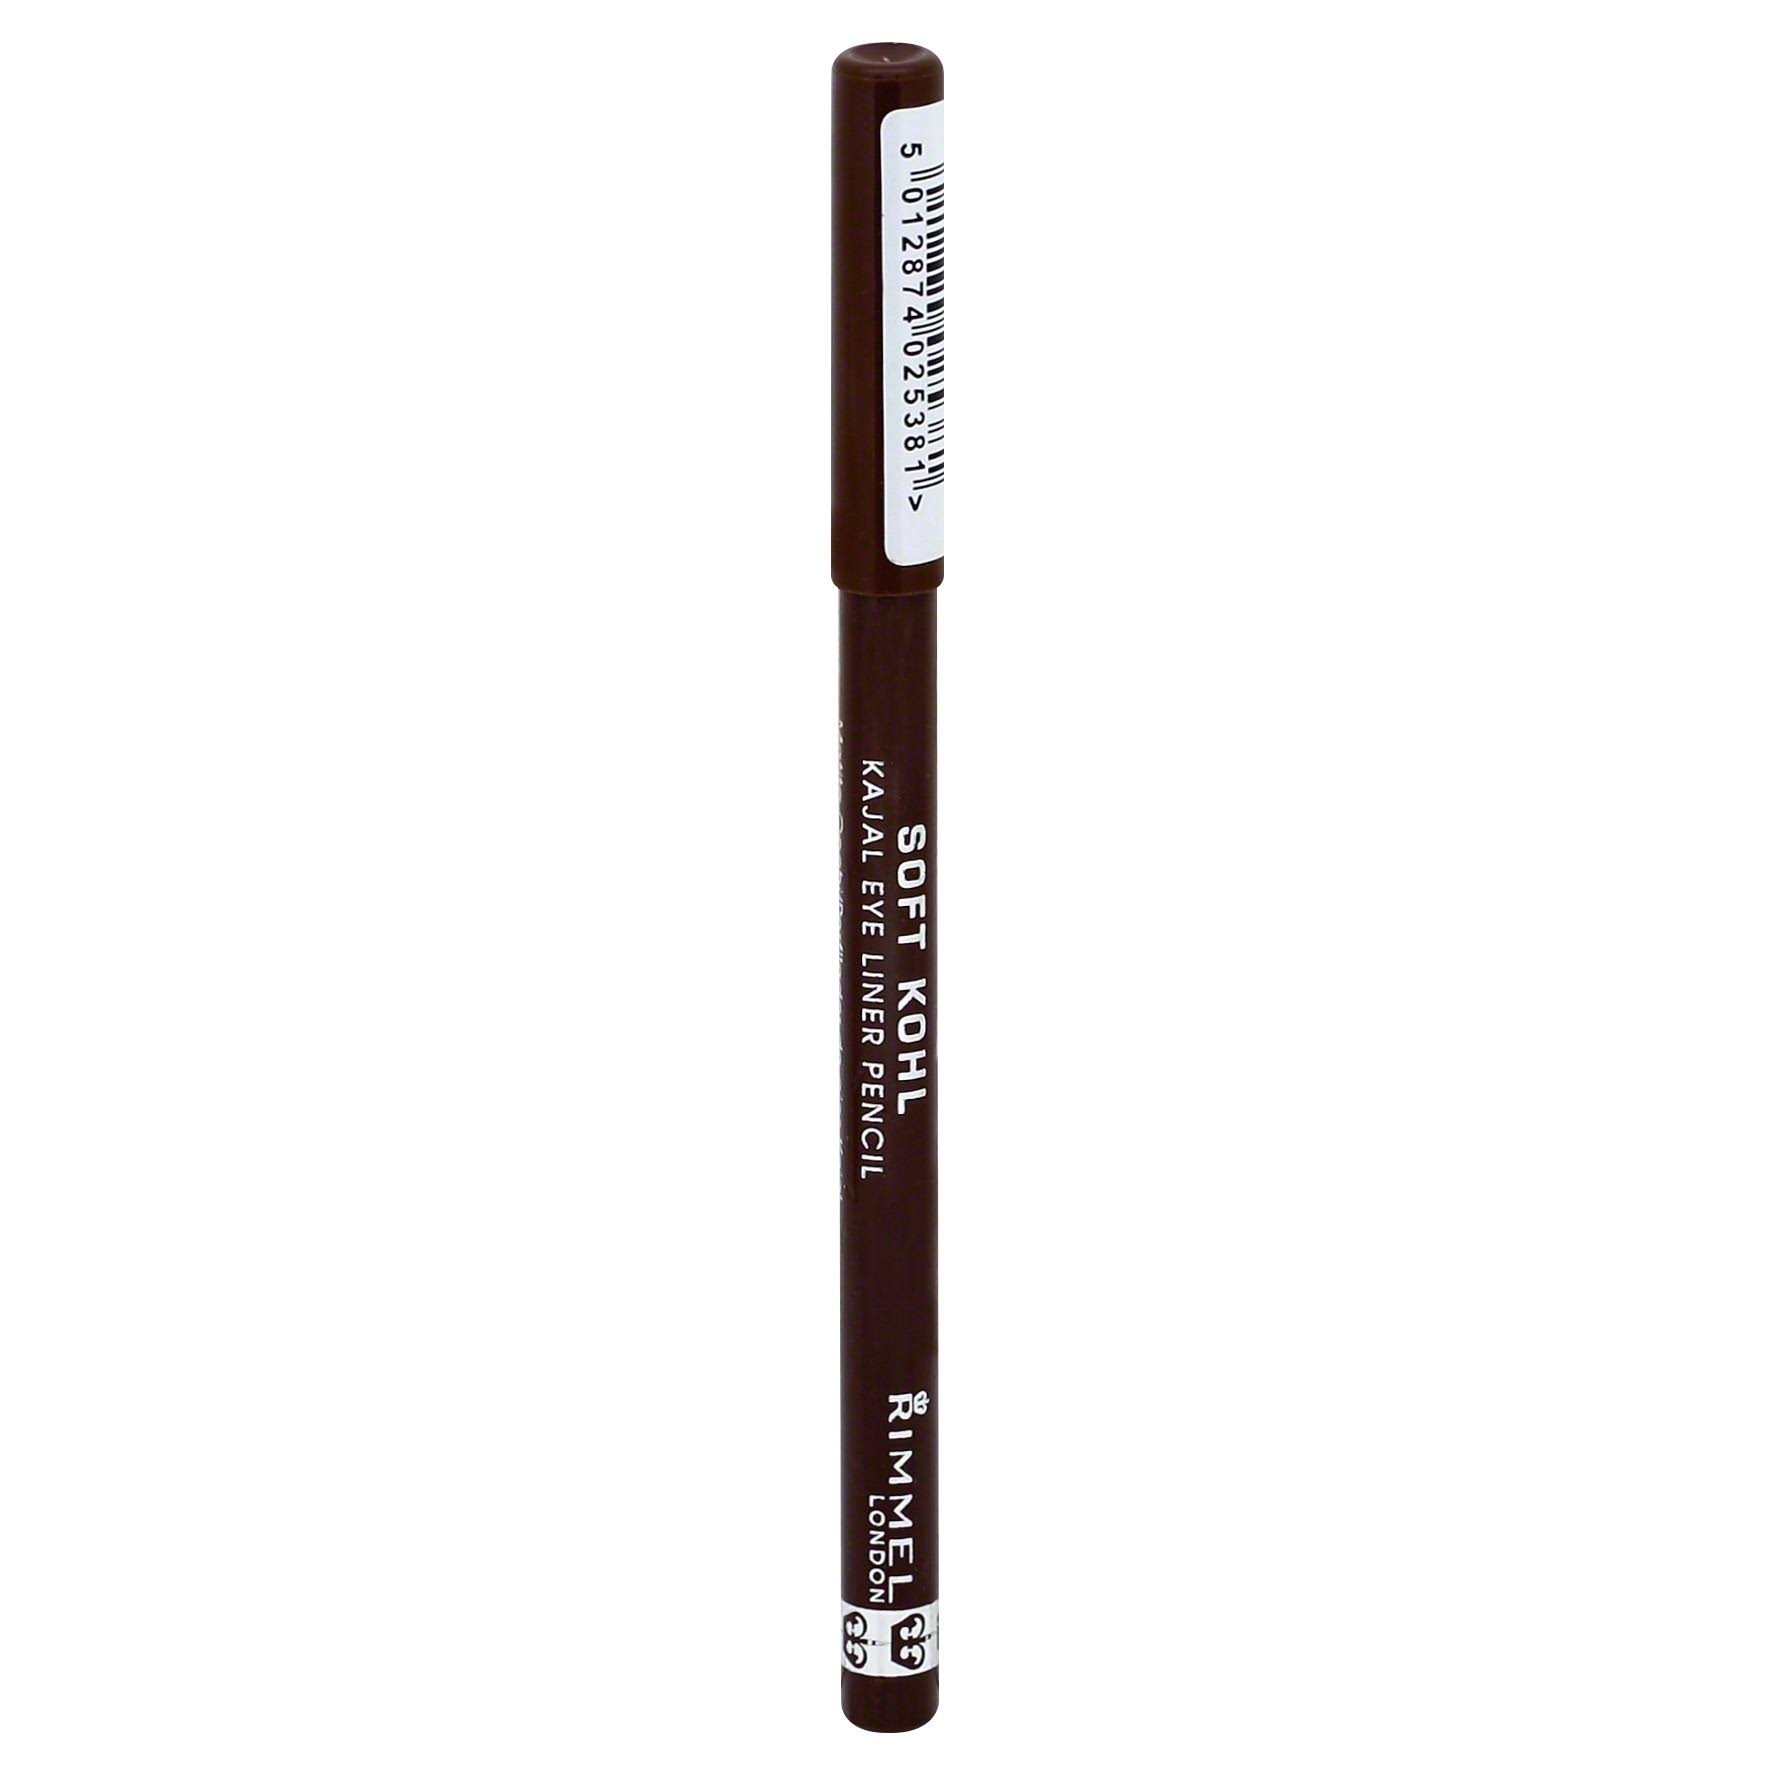 Rimmel Soft Kohl Kajal Eye Liner Pencil - Sable Brown 011